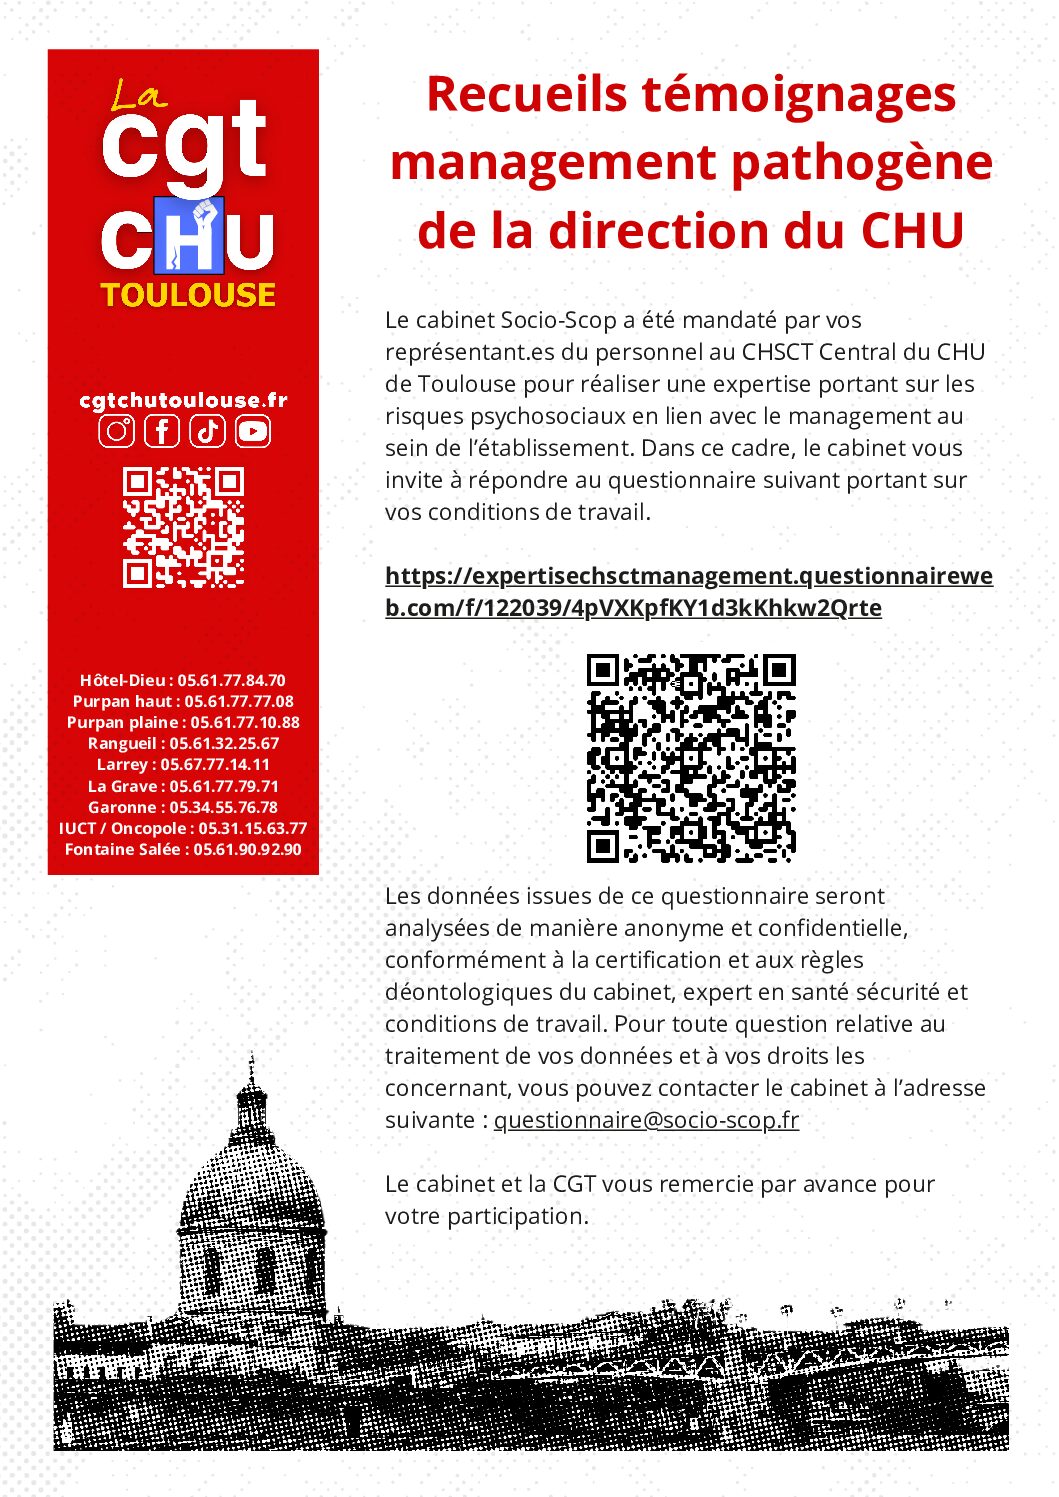 Répondez au questionnaire sur le management pathogène au CHU de Toulouse